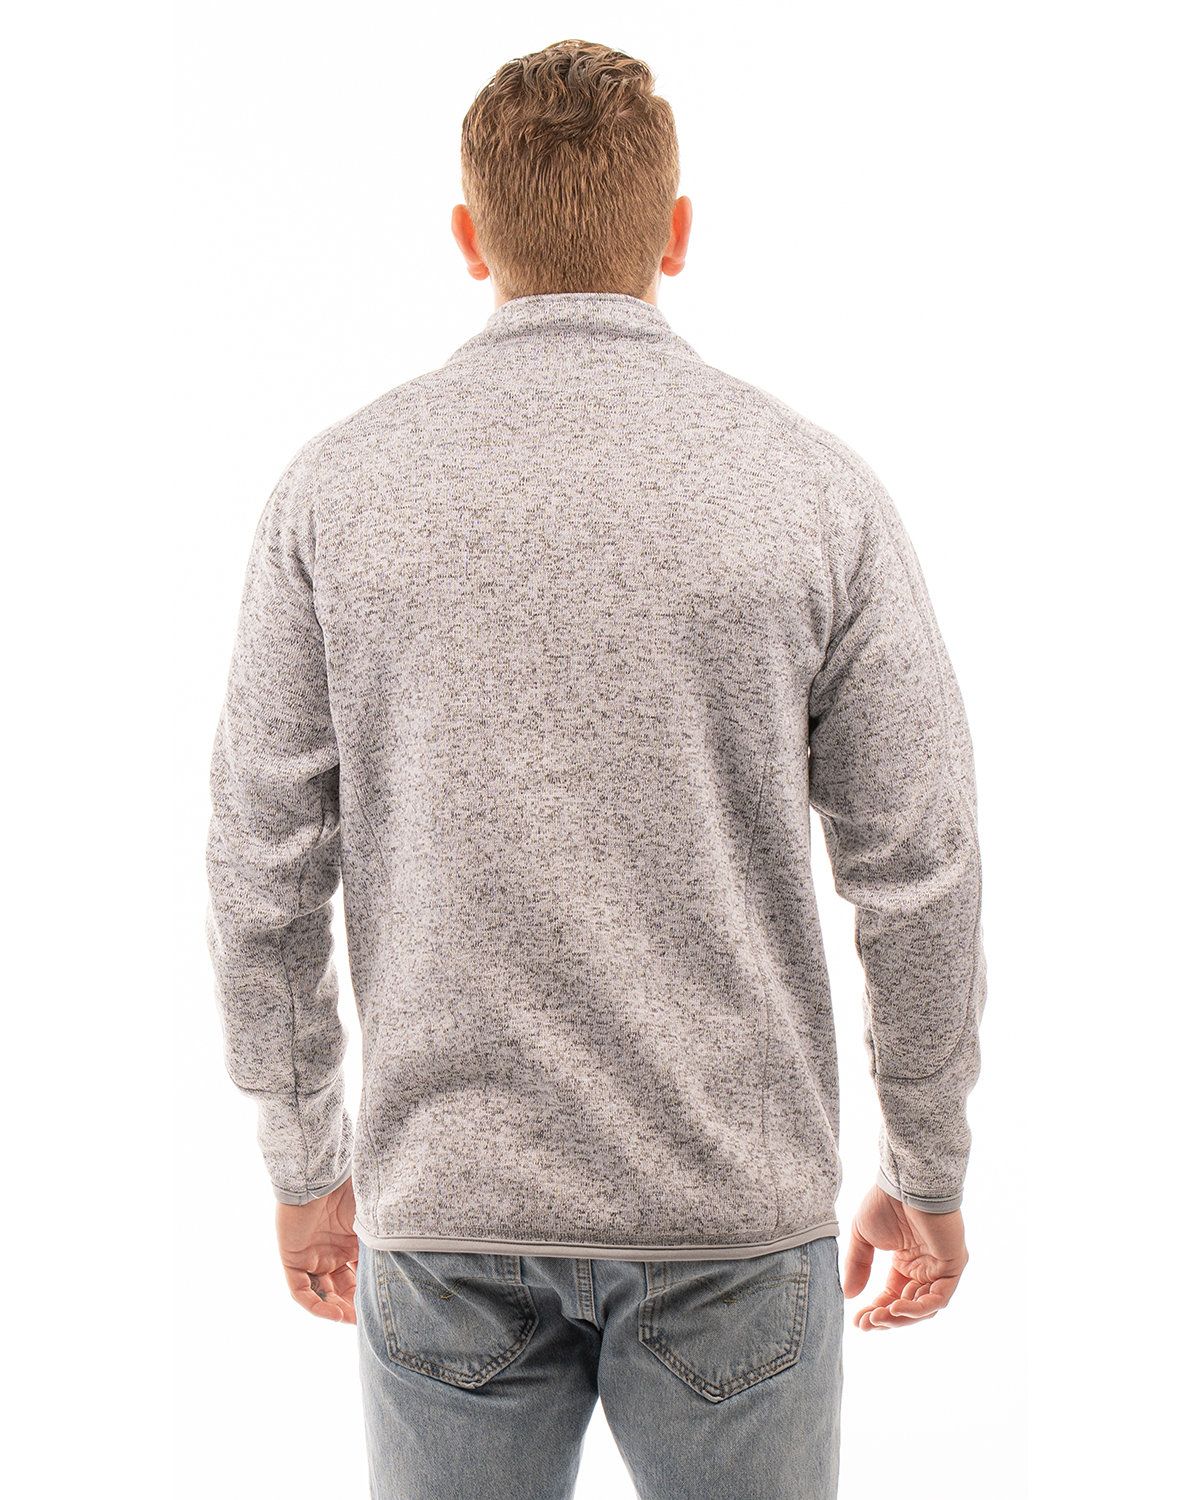 'Burnside 3901 Men's Sweater Knit Fleece Jacket'